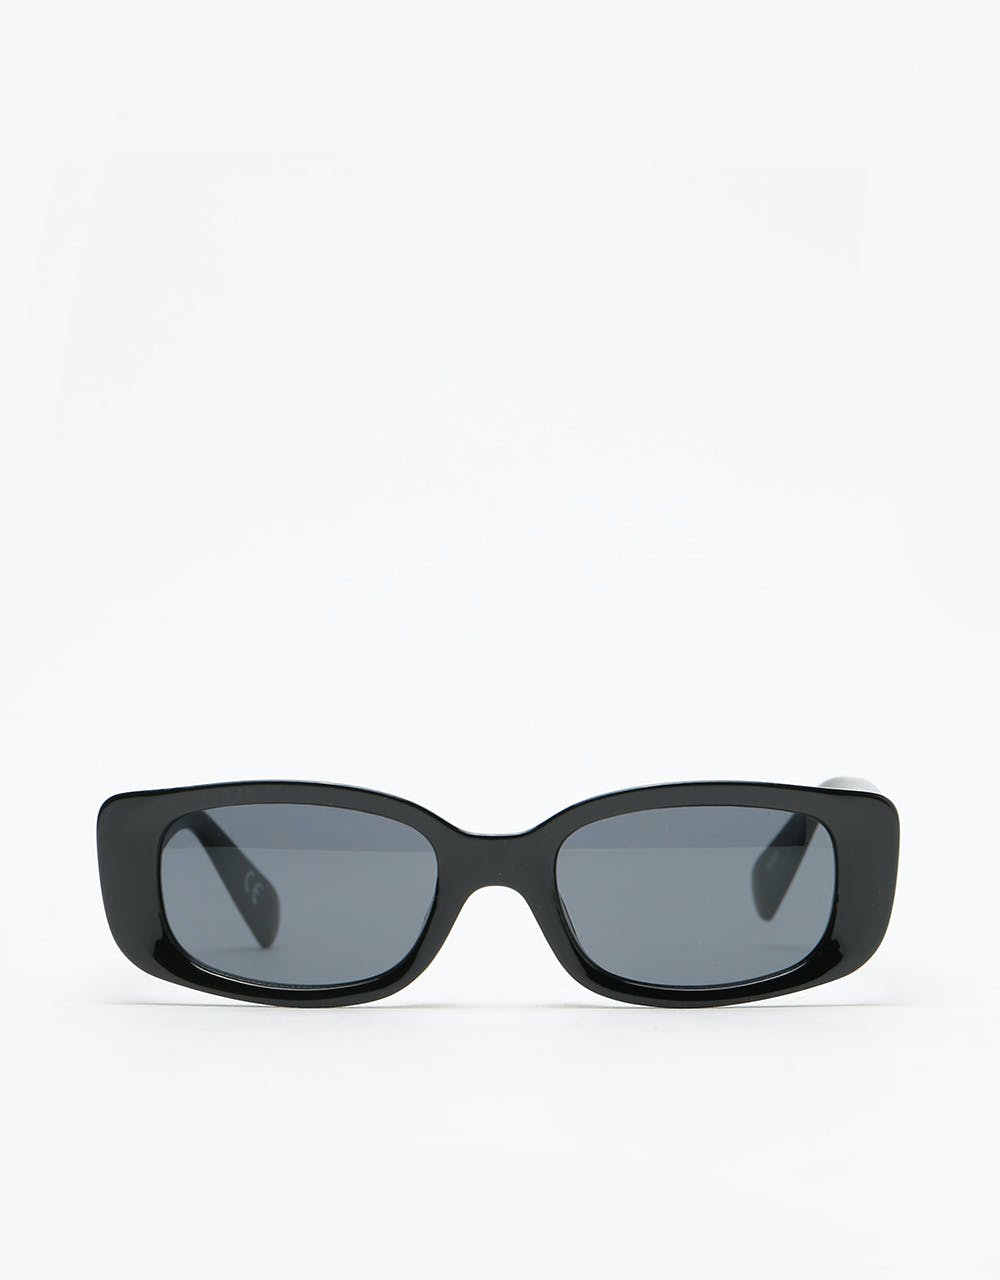 Vans Bomb Sunglasses - Black